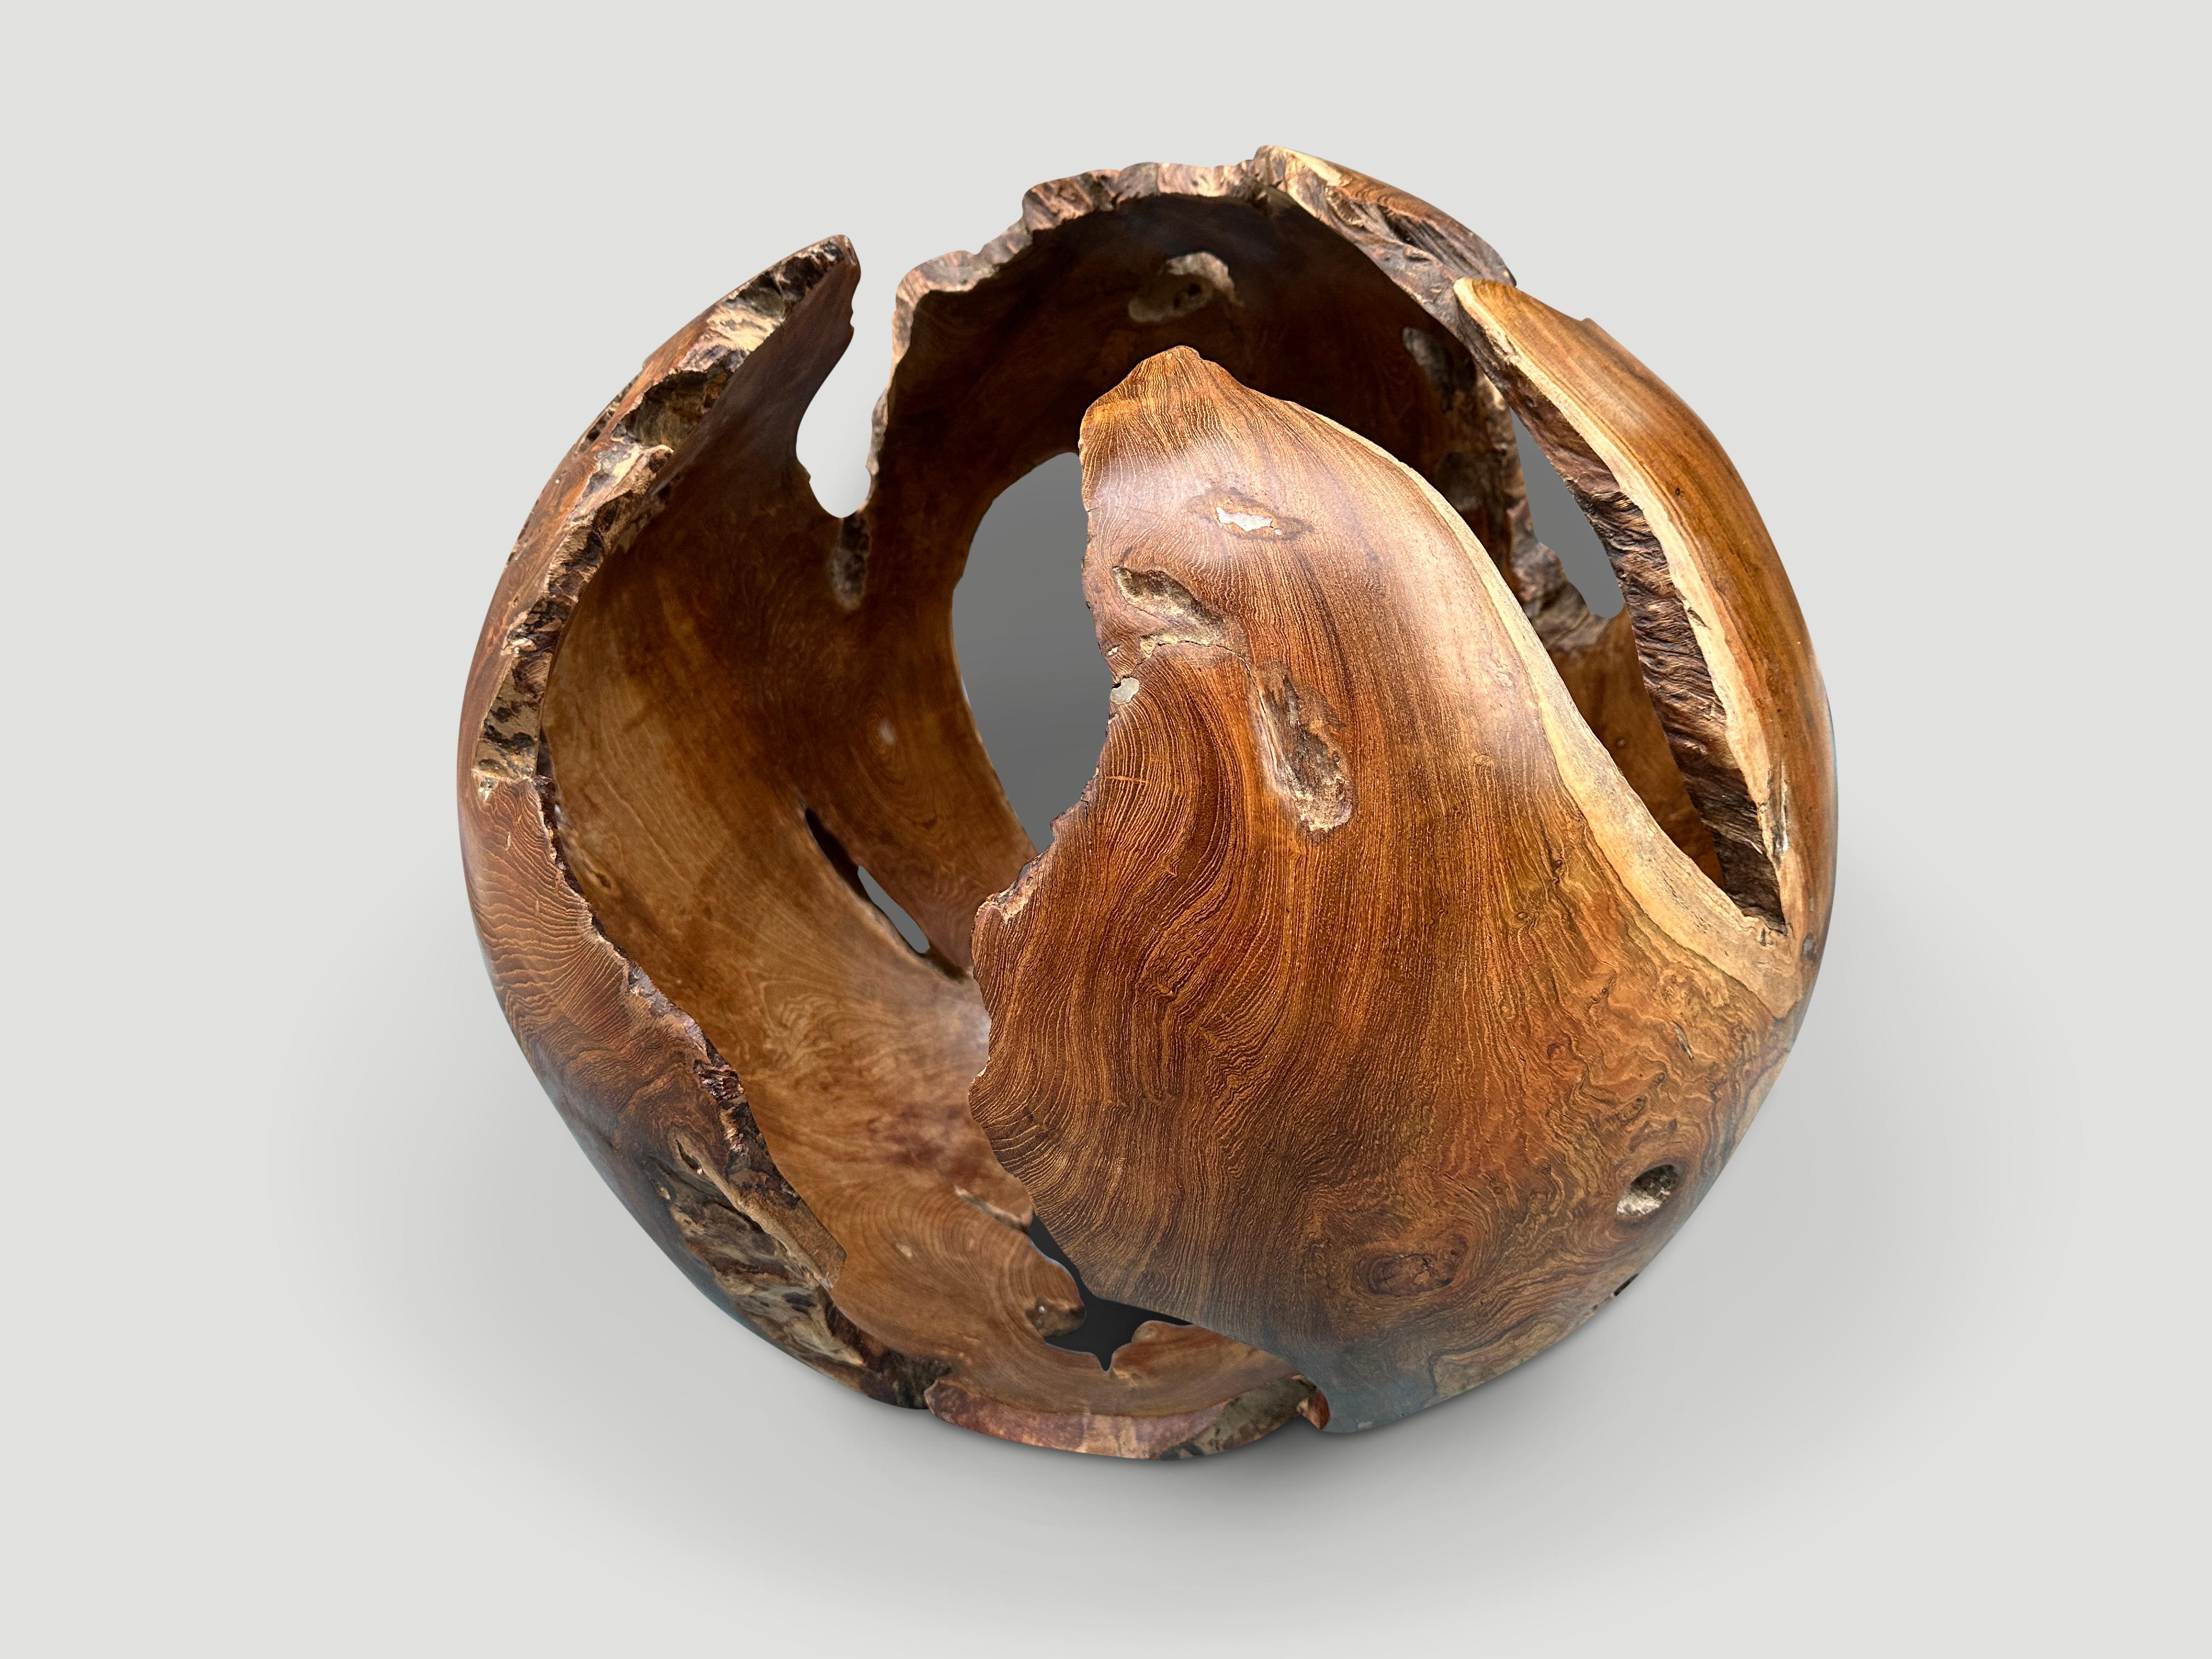 Impressionnante sphère sculpturale évidée. Finition avec une huile naturelle révélant le magnifique grain du bois. Cette sculpture organique est stable lorsqu'elle est posée sur un côté ou sur l'autre.

Cette sculpture a été réalisée à la main dans